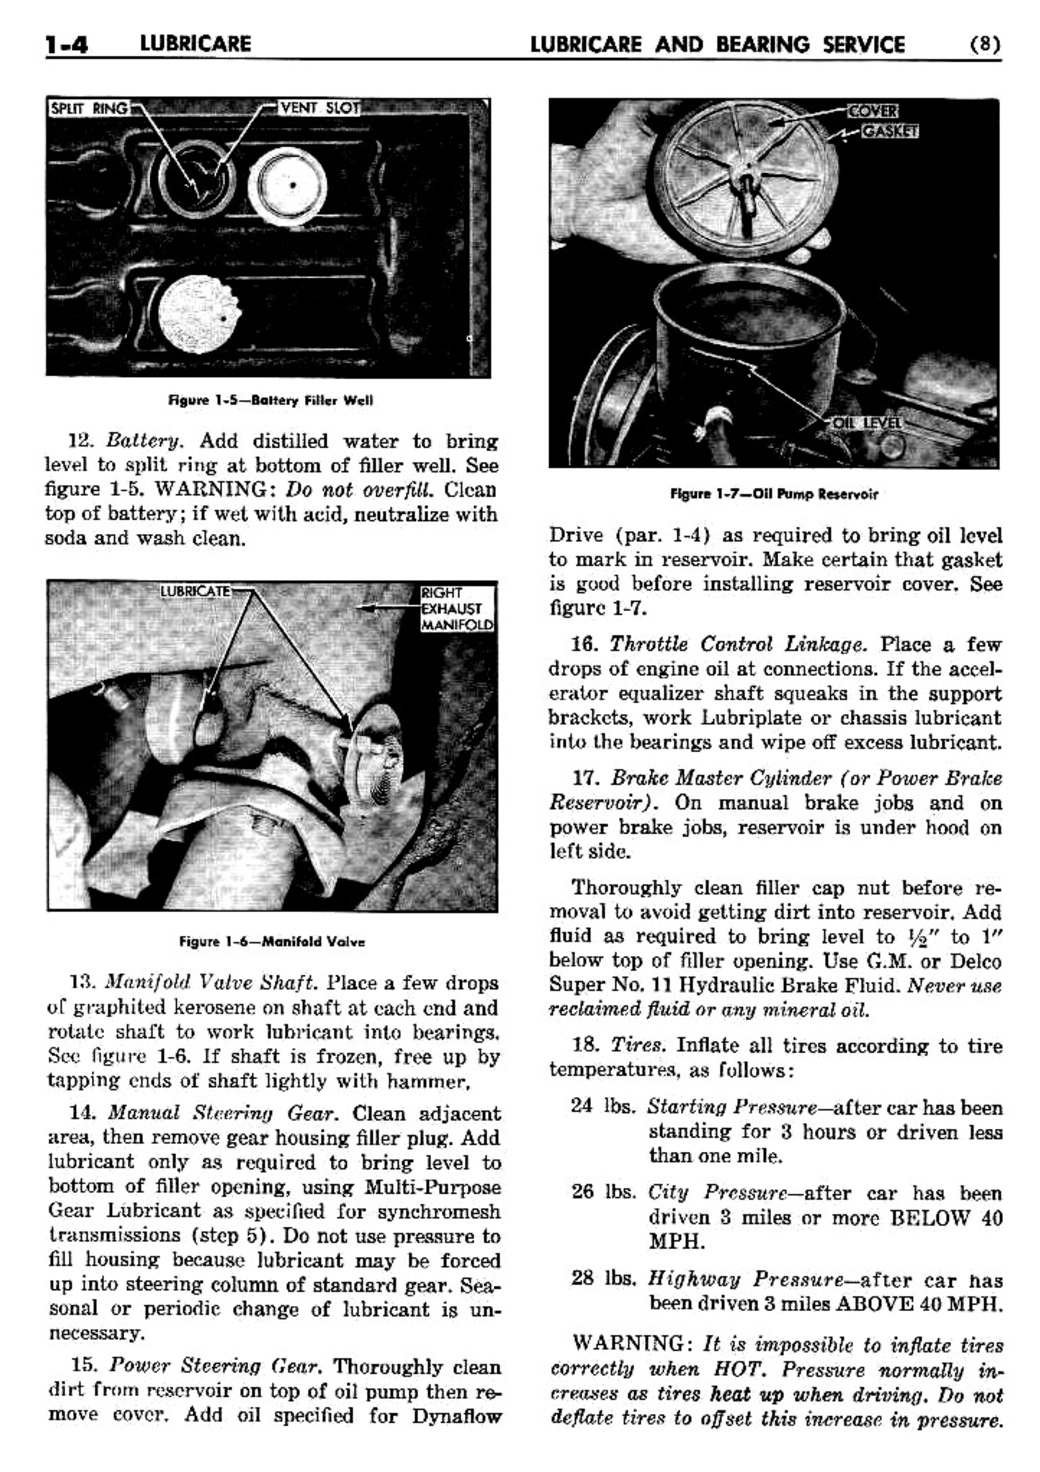 n_02 1956 Buick Shop Manual - Lubricare-004-004.jpg